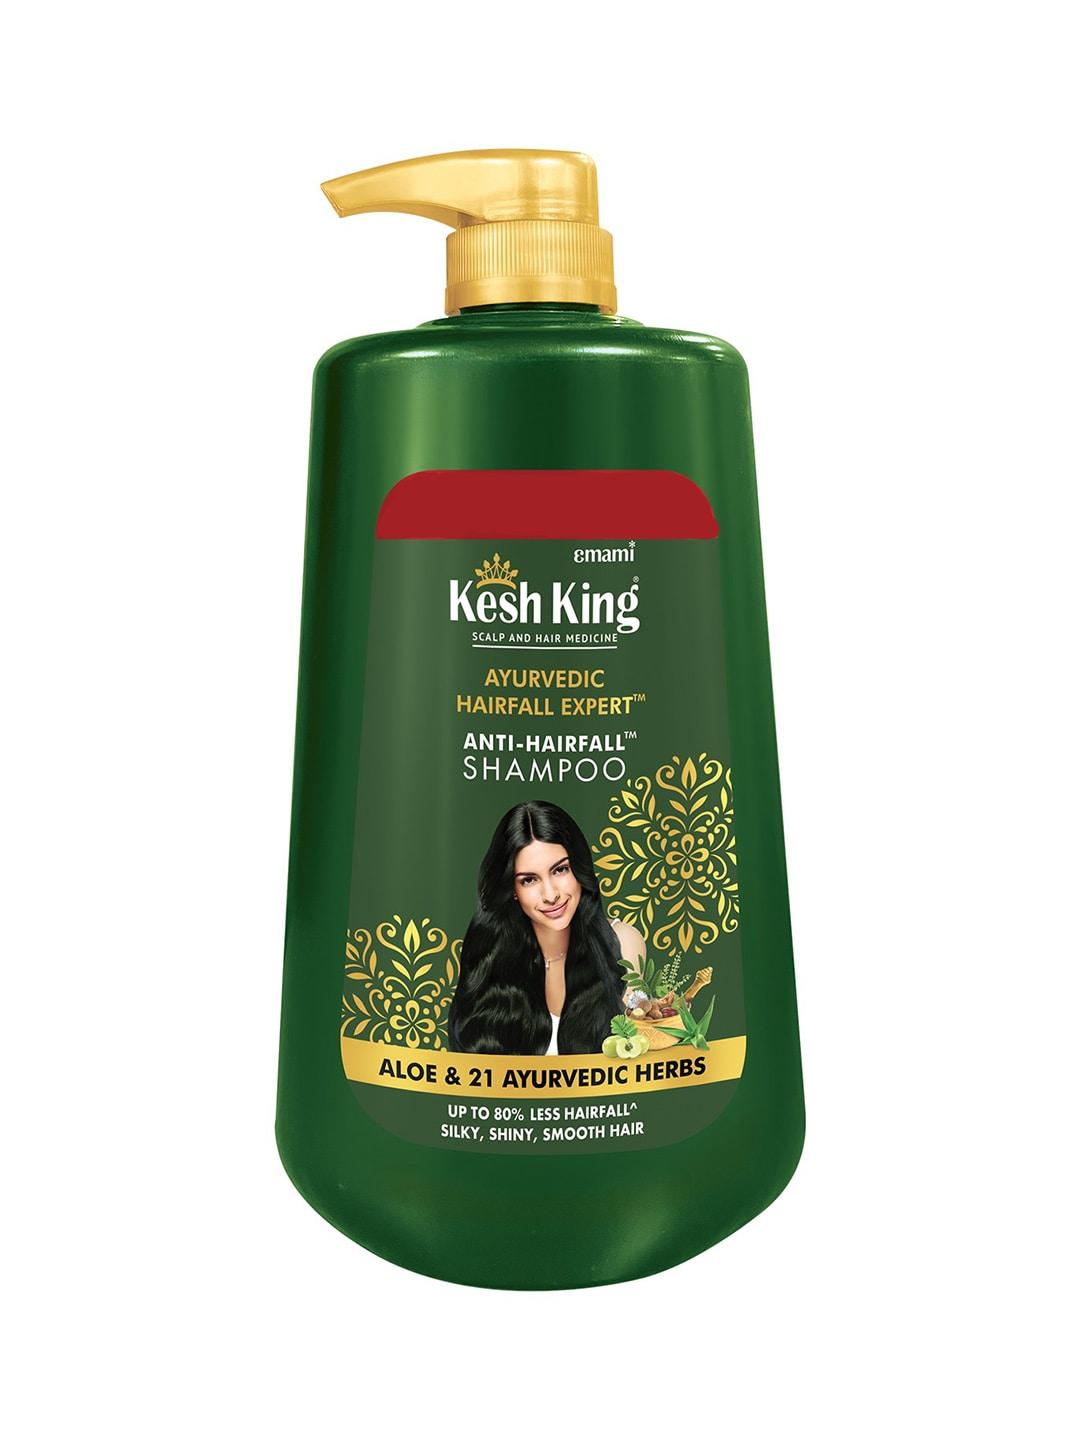 Emami Kesh King Ayurvedic Hairfall Expert Anti-Hairfall Shampoo with Aloe & Herbs - 1000ml